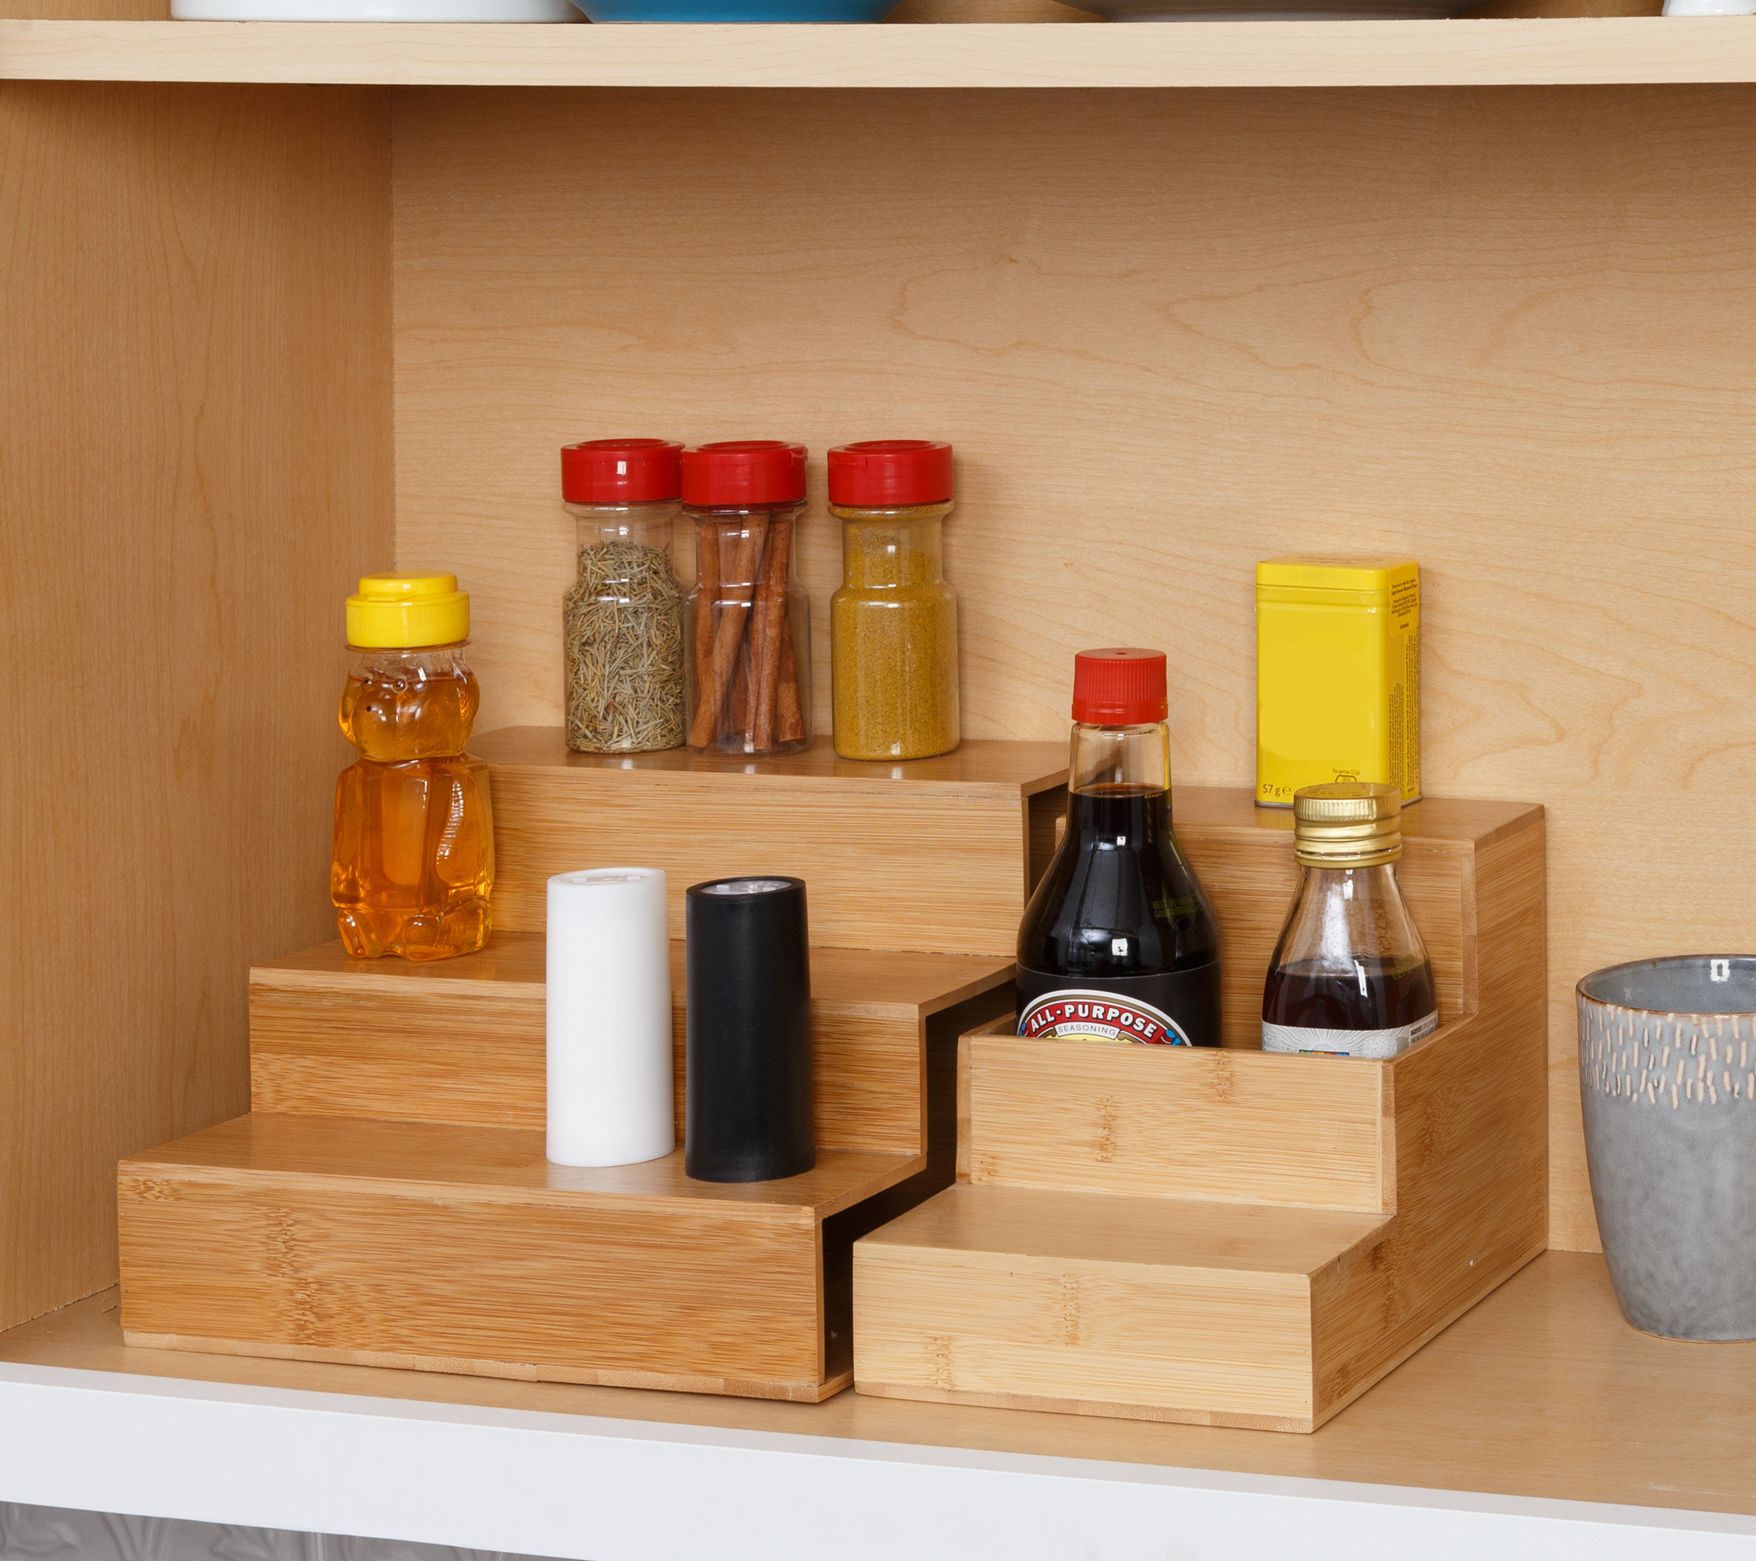 16-Jar Kitchen Spice Rack with Salt & Pepper Grinders 3 Oz Glass